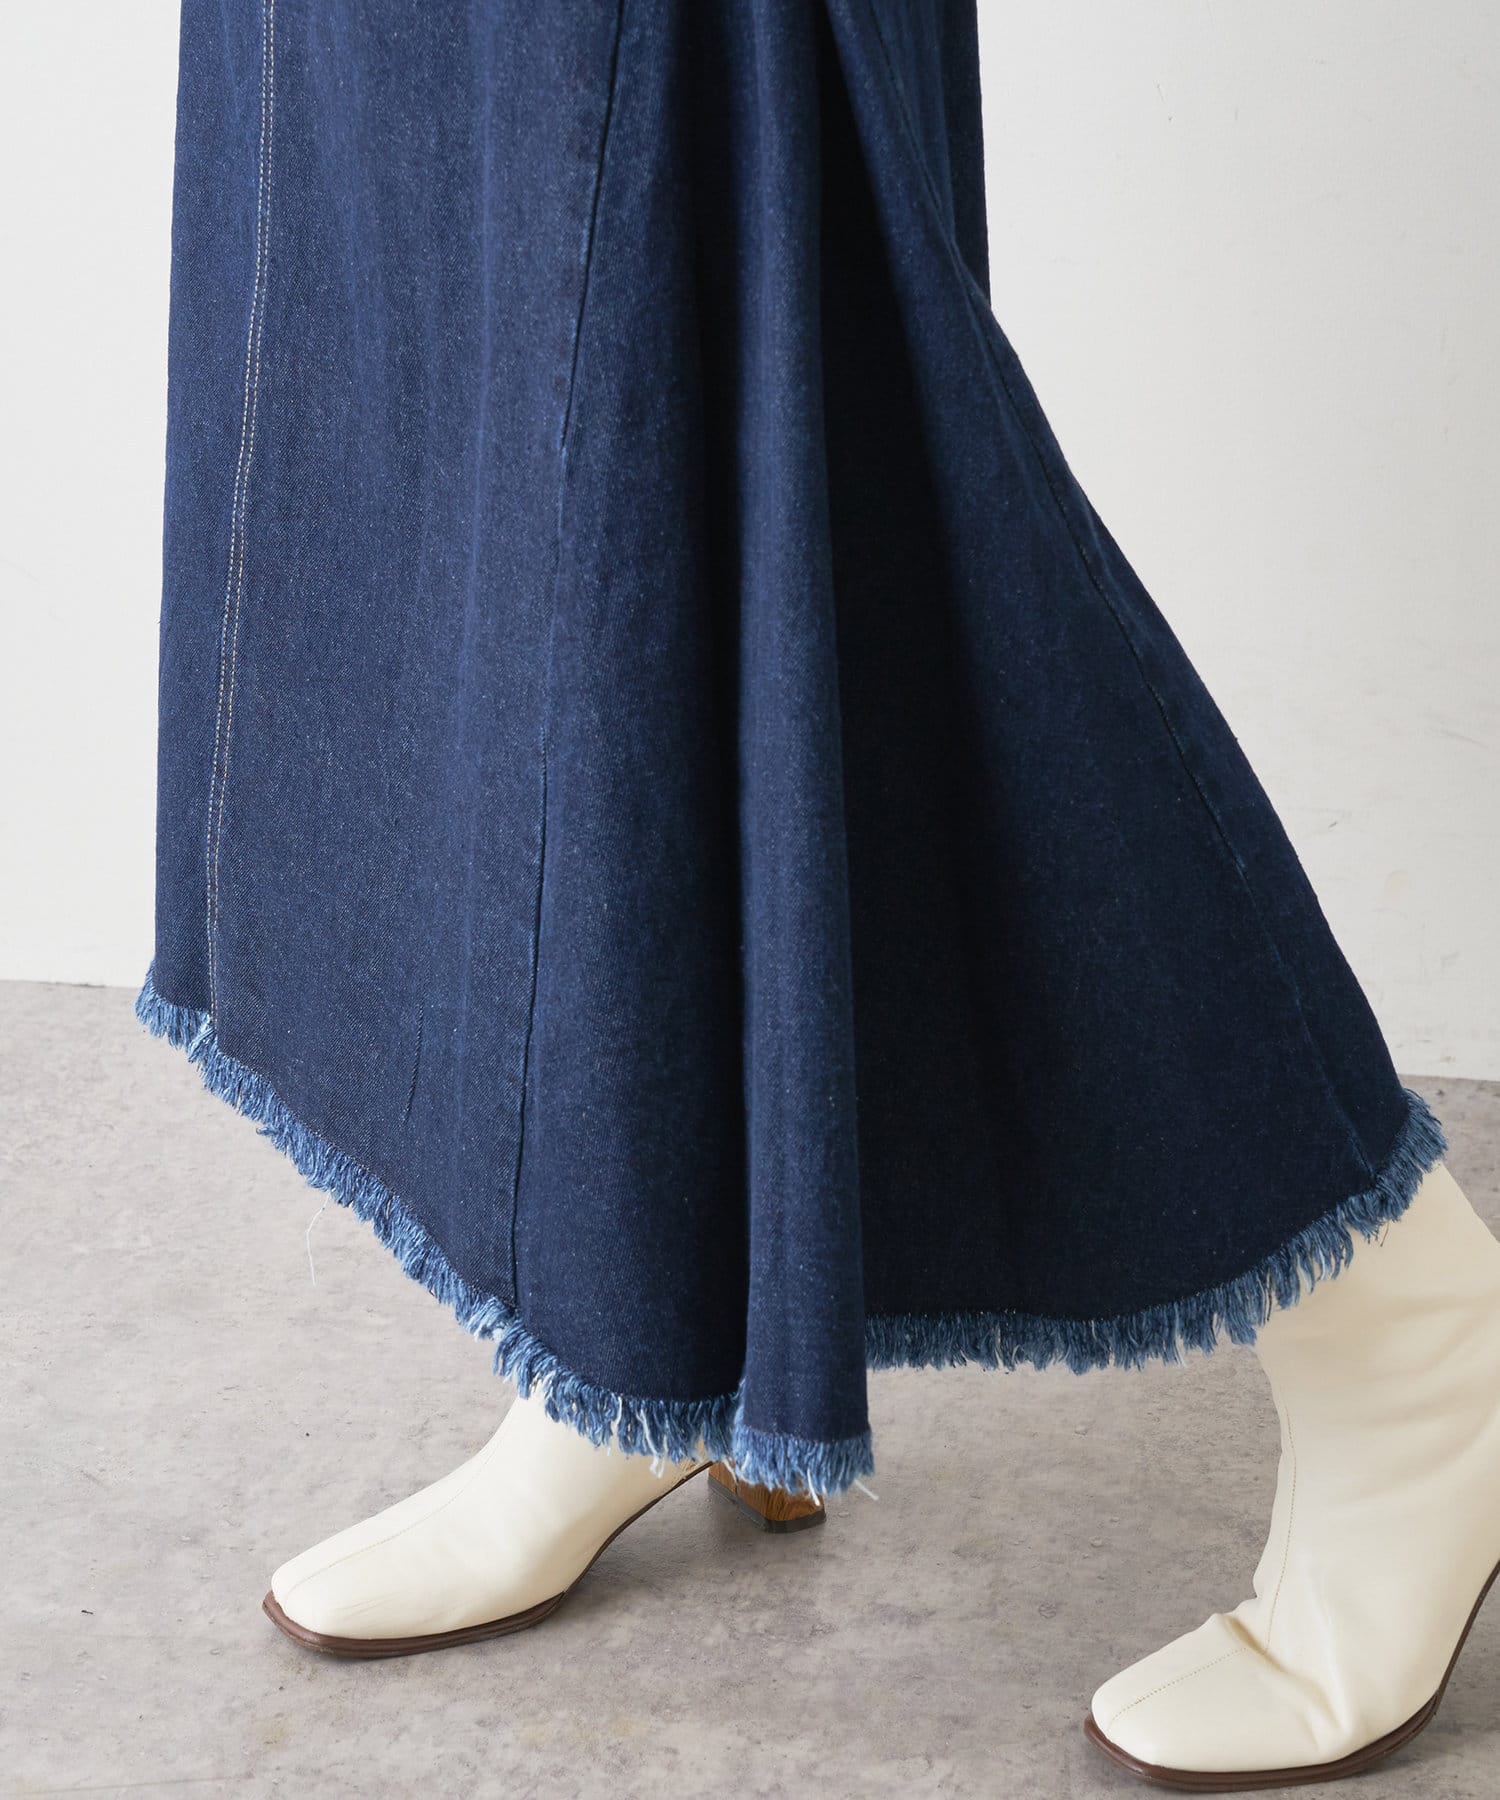 natural couture(ナチュラルクチュール) 【WEB限定】サイドタックフリンジスカート Mサイズ